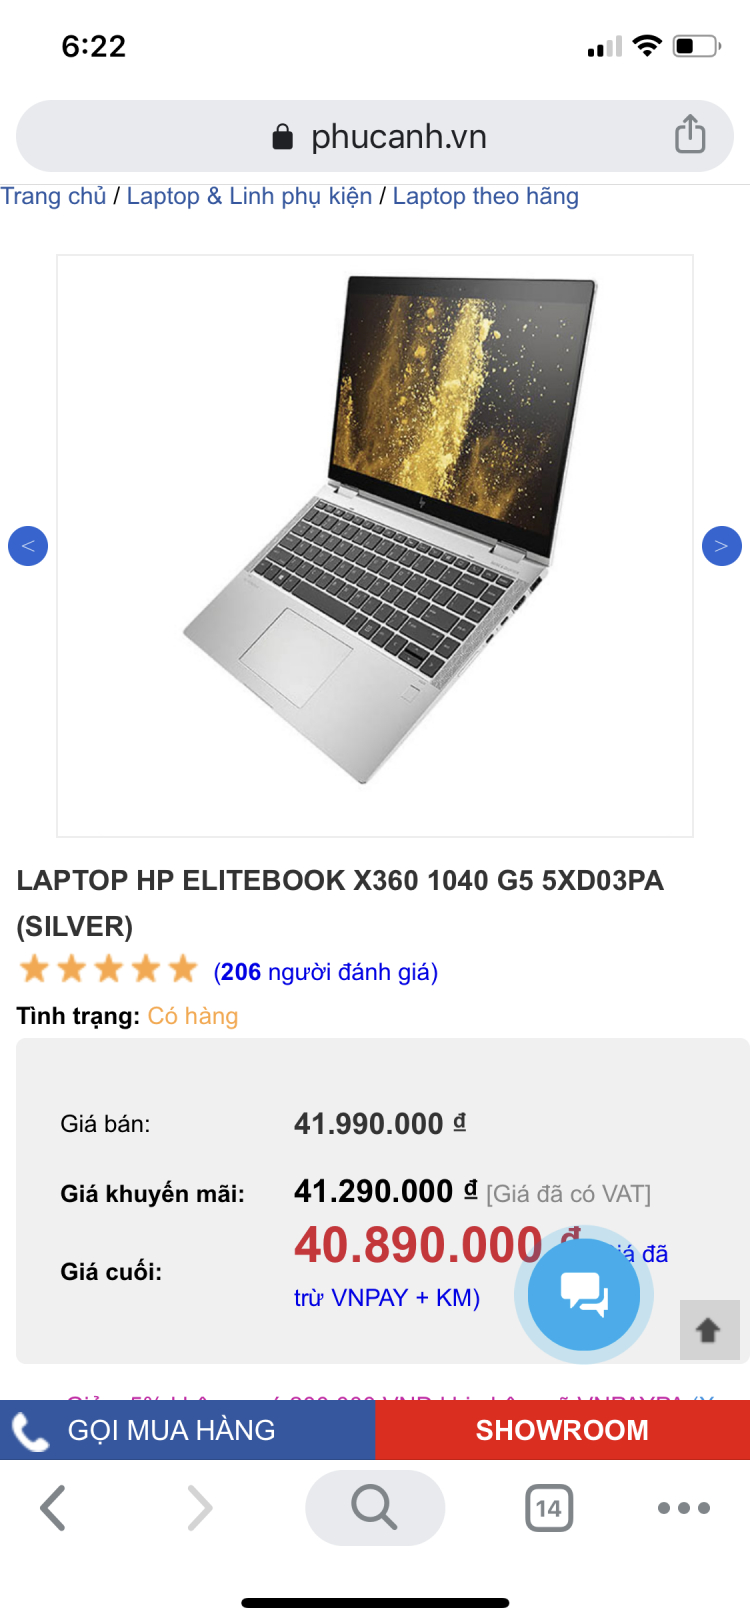 Pin Laptop: Nên thay mới hay làm lại?